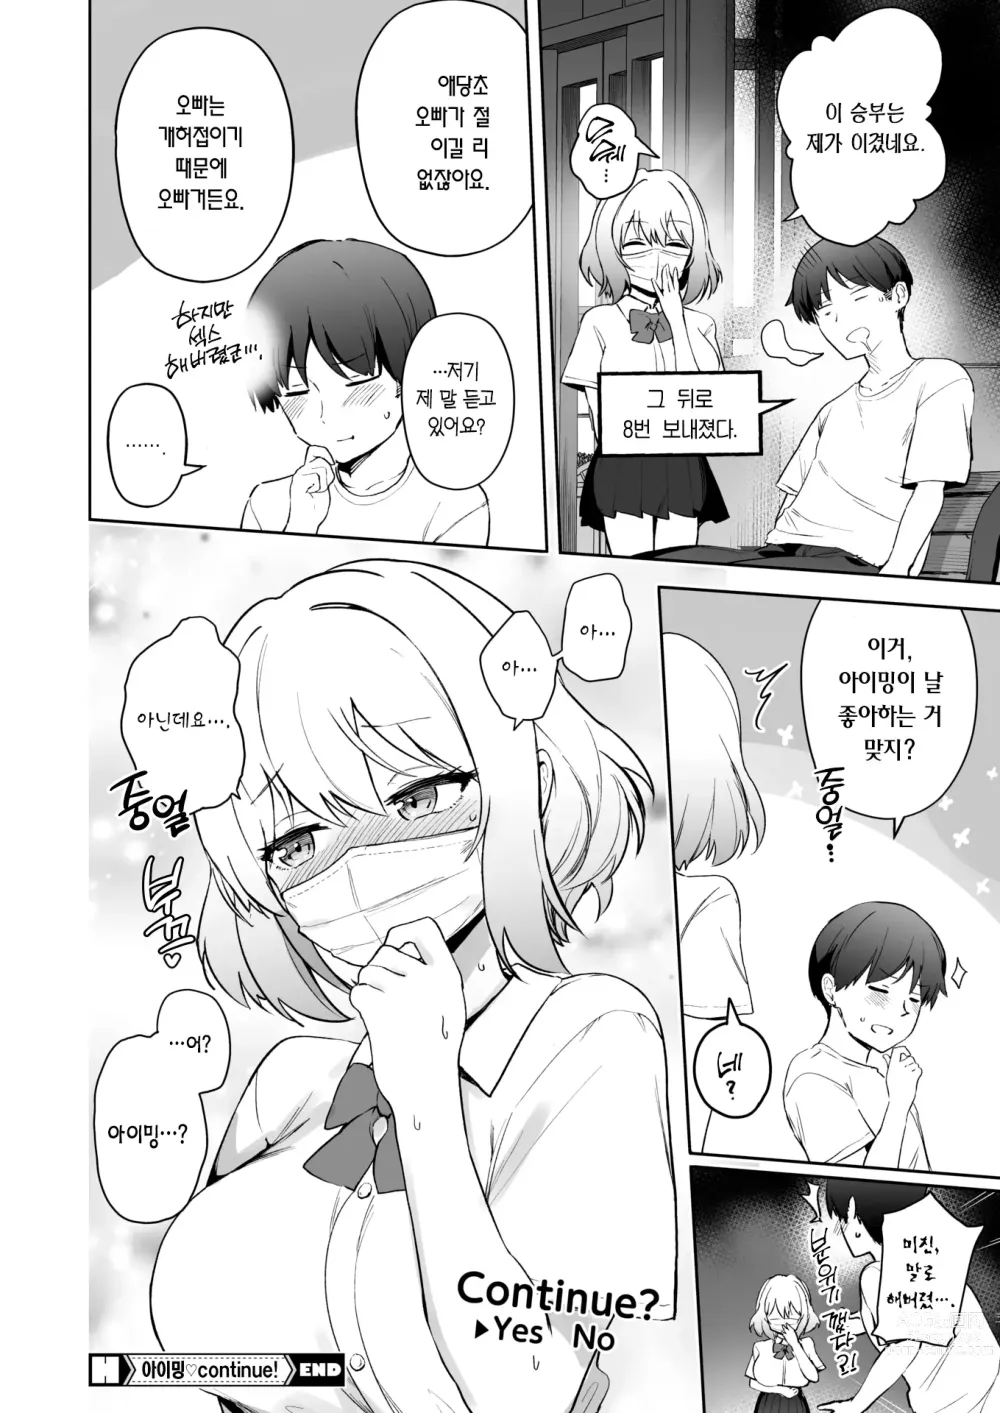 Page 25 of manga  아이밍 Continue!